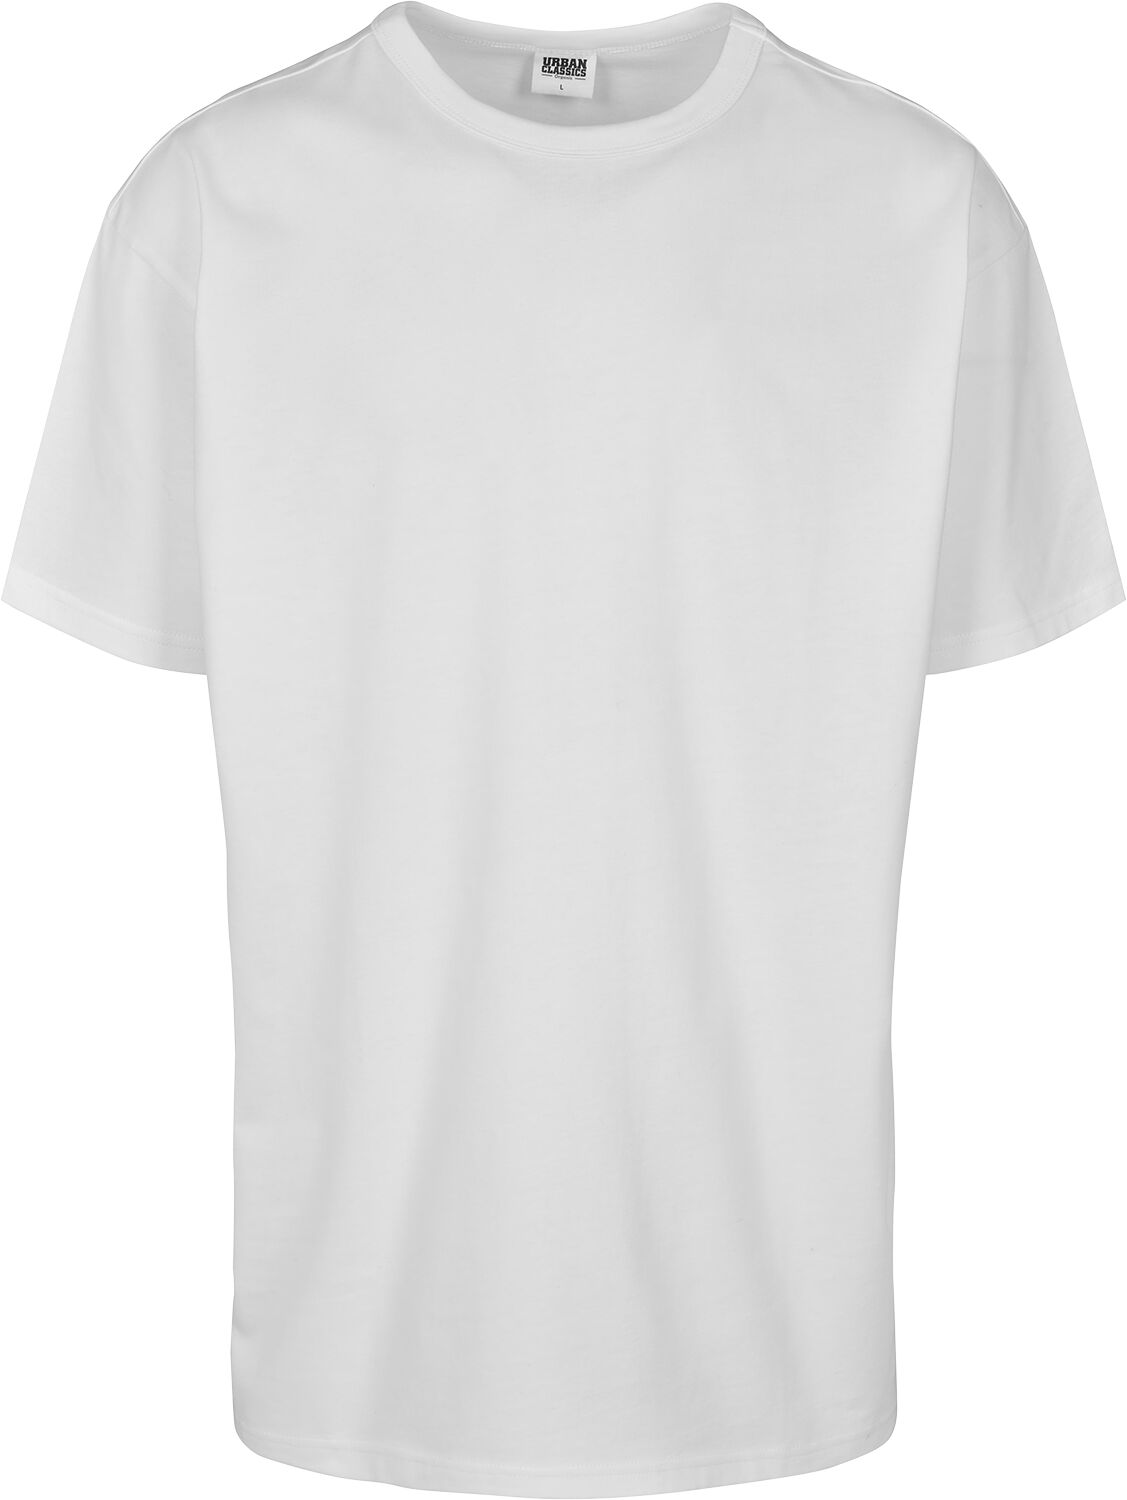 T-Shirt Manches courtes de Urban Classics - T-Shirt Organique Basique - S à 3XL - pour Homme - blanc